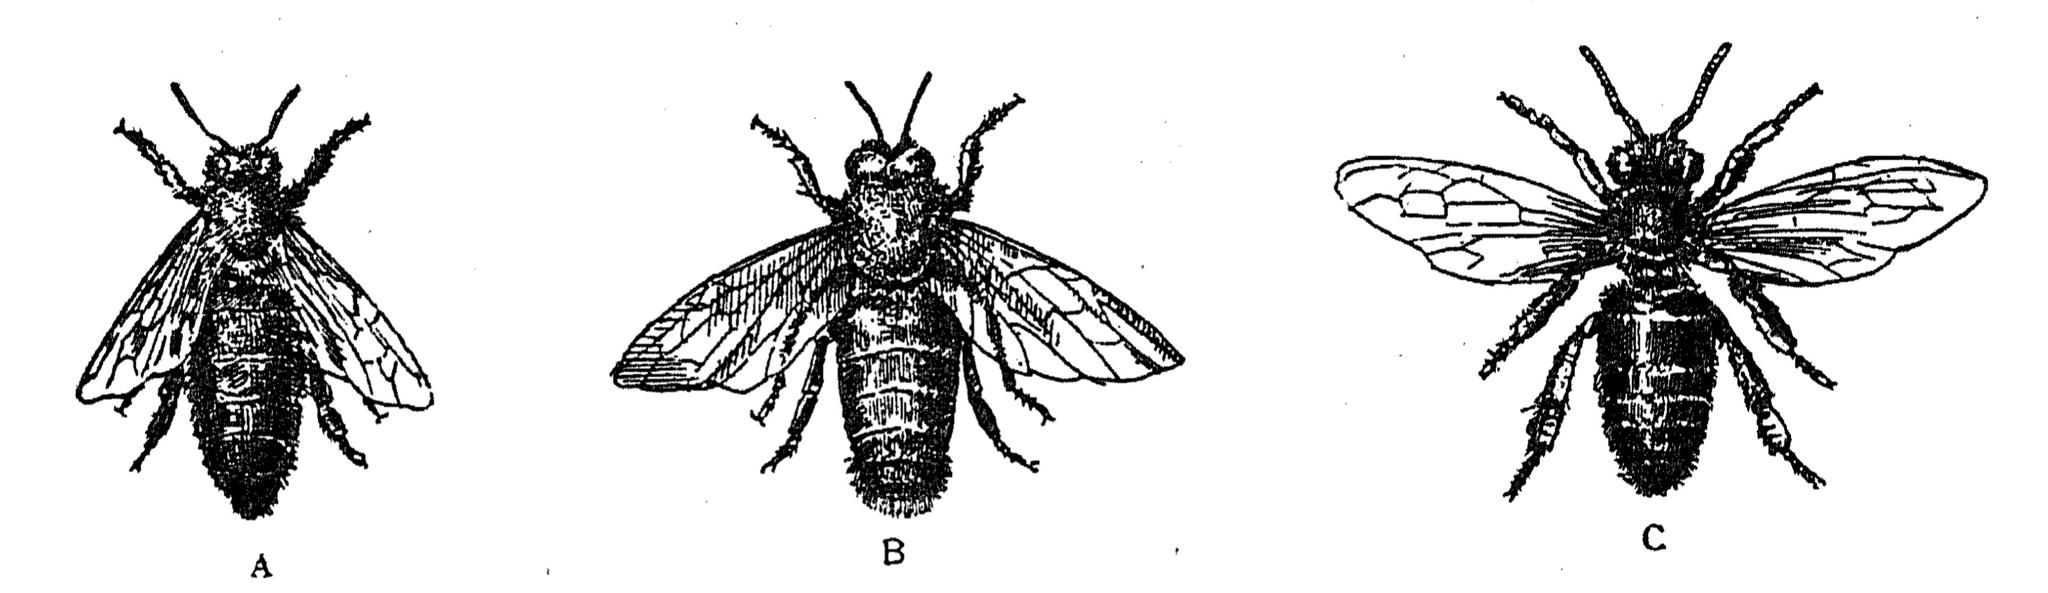 Пчелы: A — матка, B — трутень и C — рабочая пчела